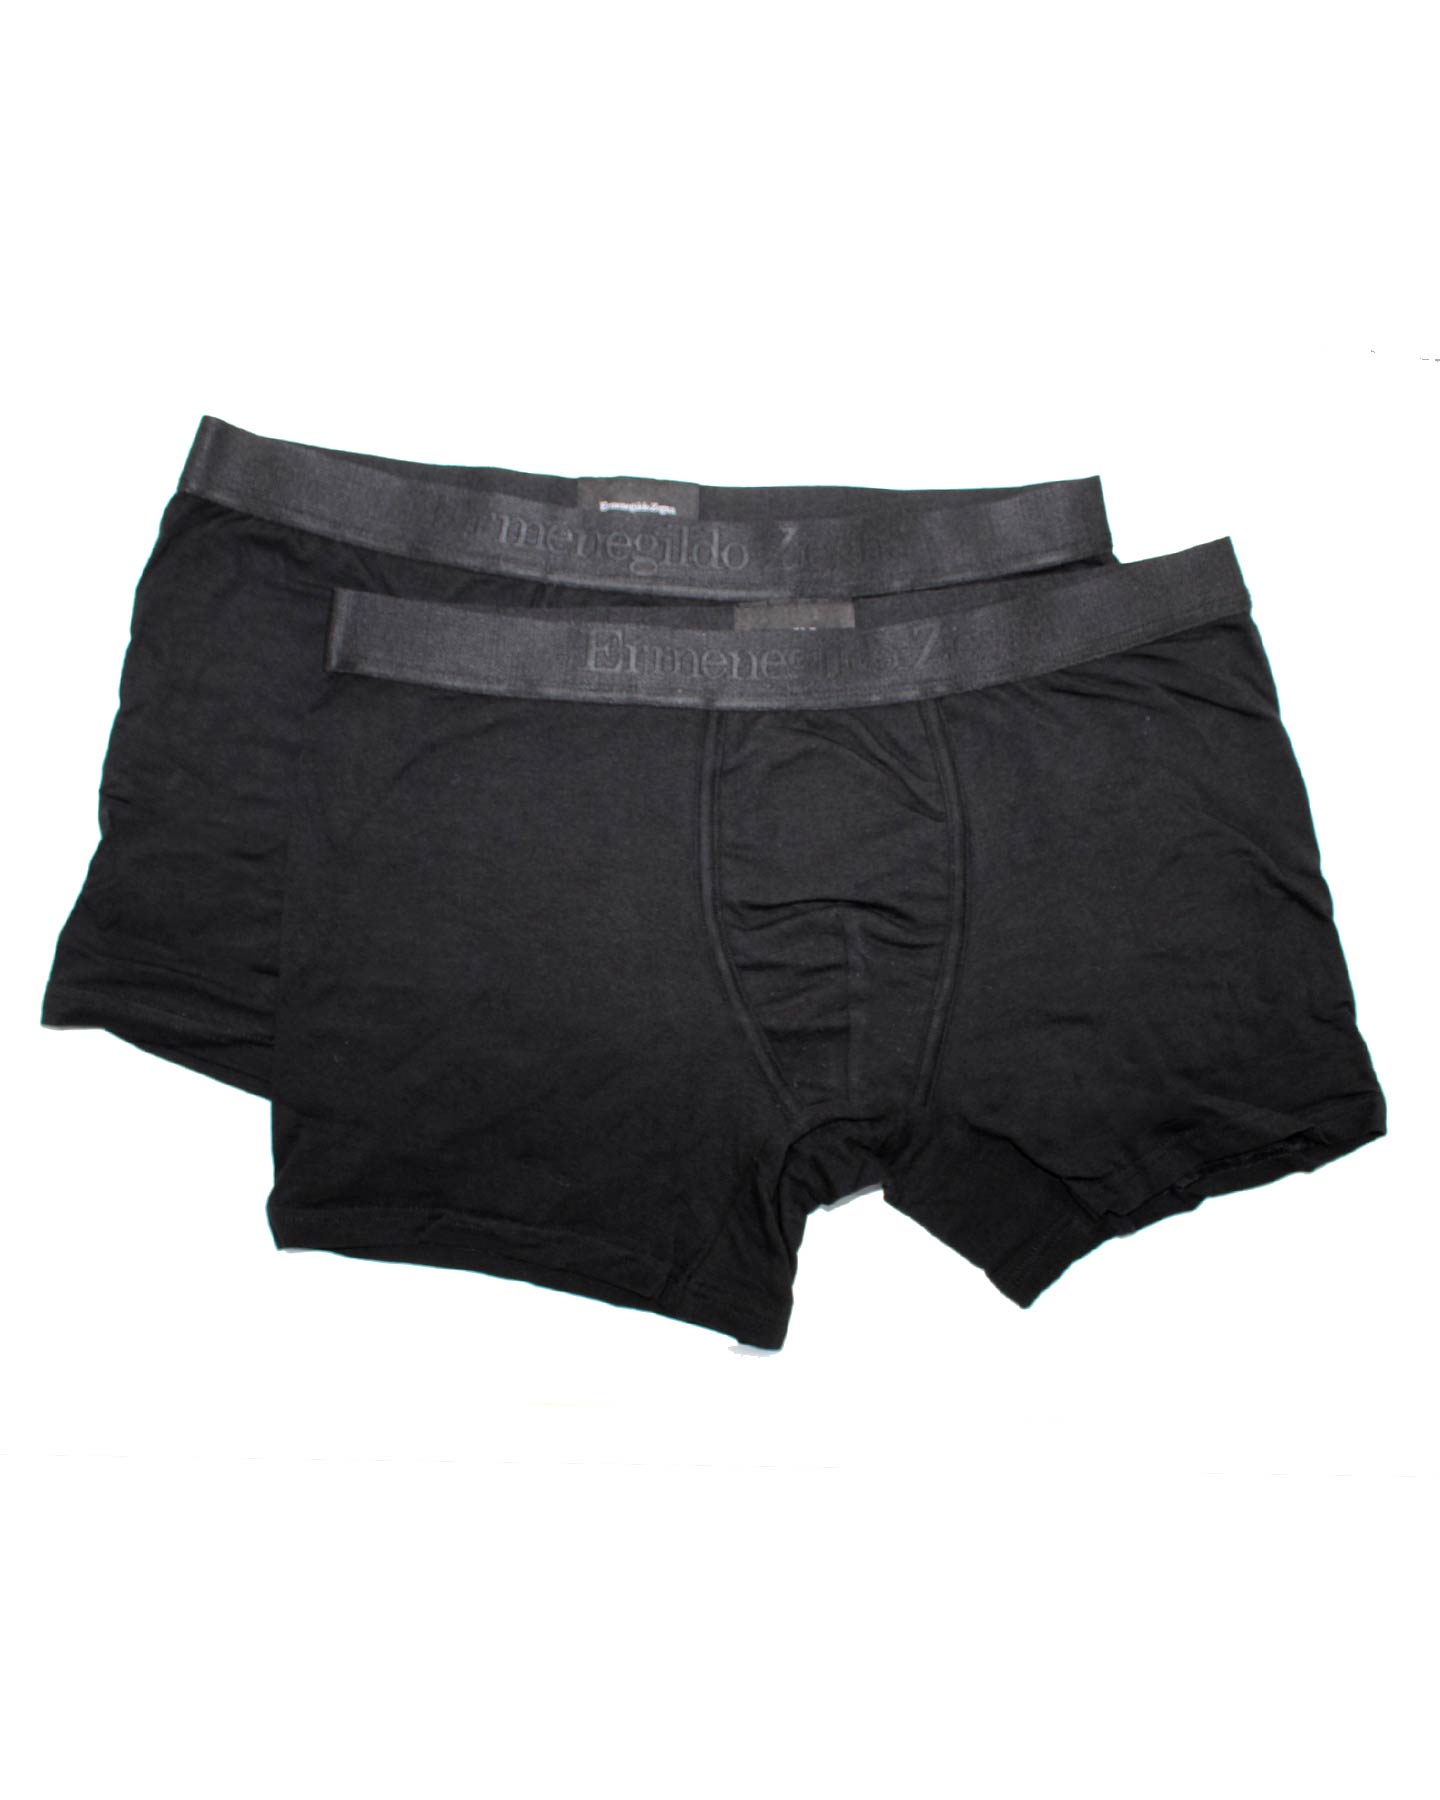 Ermenegildo Zegna Boxer Briefs Black Men Underwear 2 Pack Stretch Cott -  Tie Deals